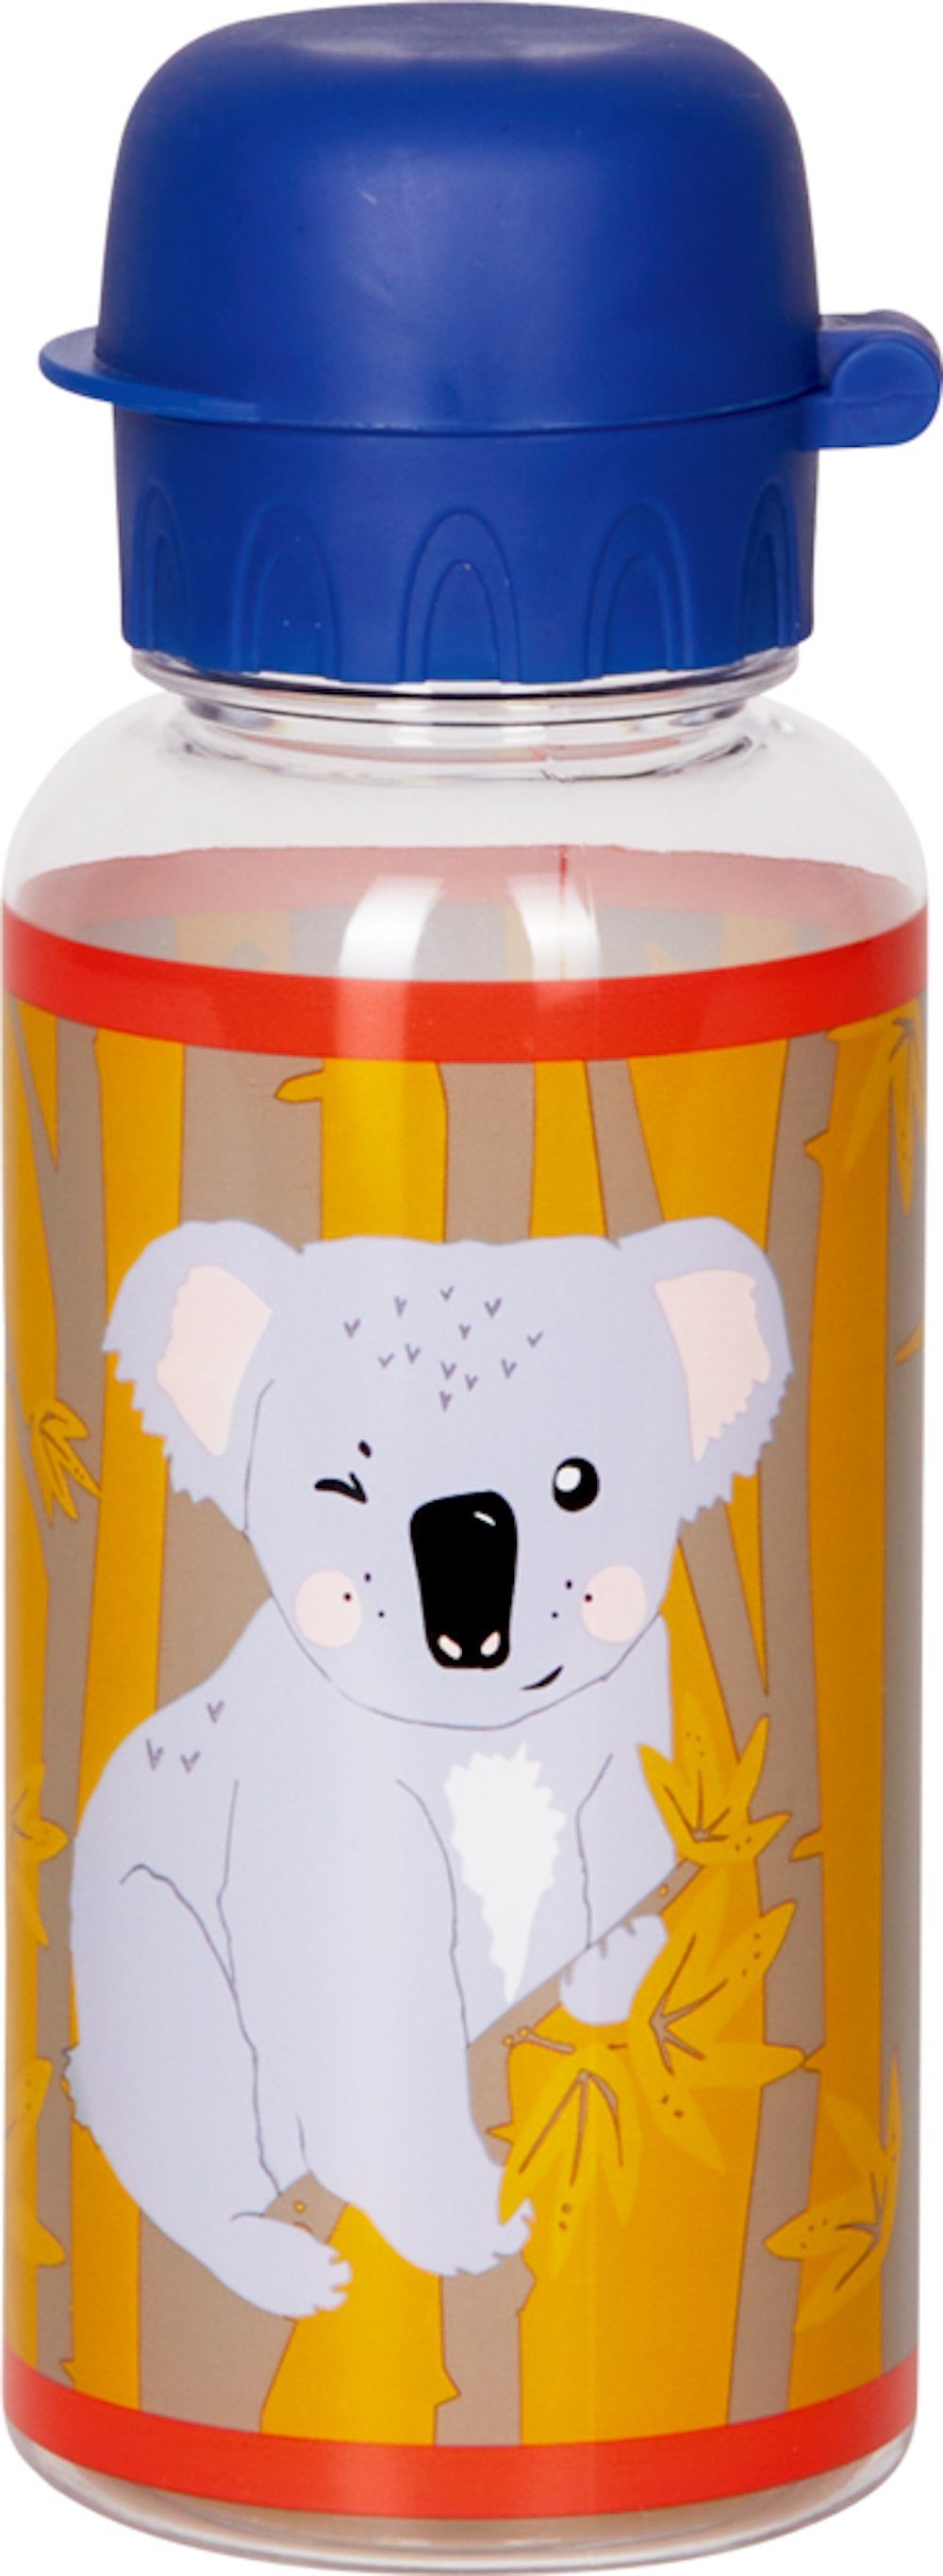 Kleine Freunde, Koala Trinkaufsatz und Namensfeld SPIEGELBURG spülmaschinenfester Trinkflasche l 0,4 DIE COPPENRATH